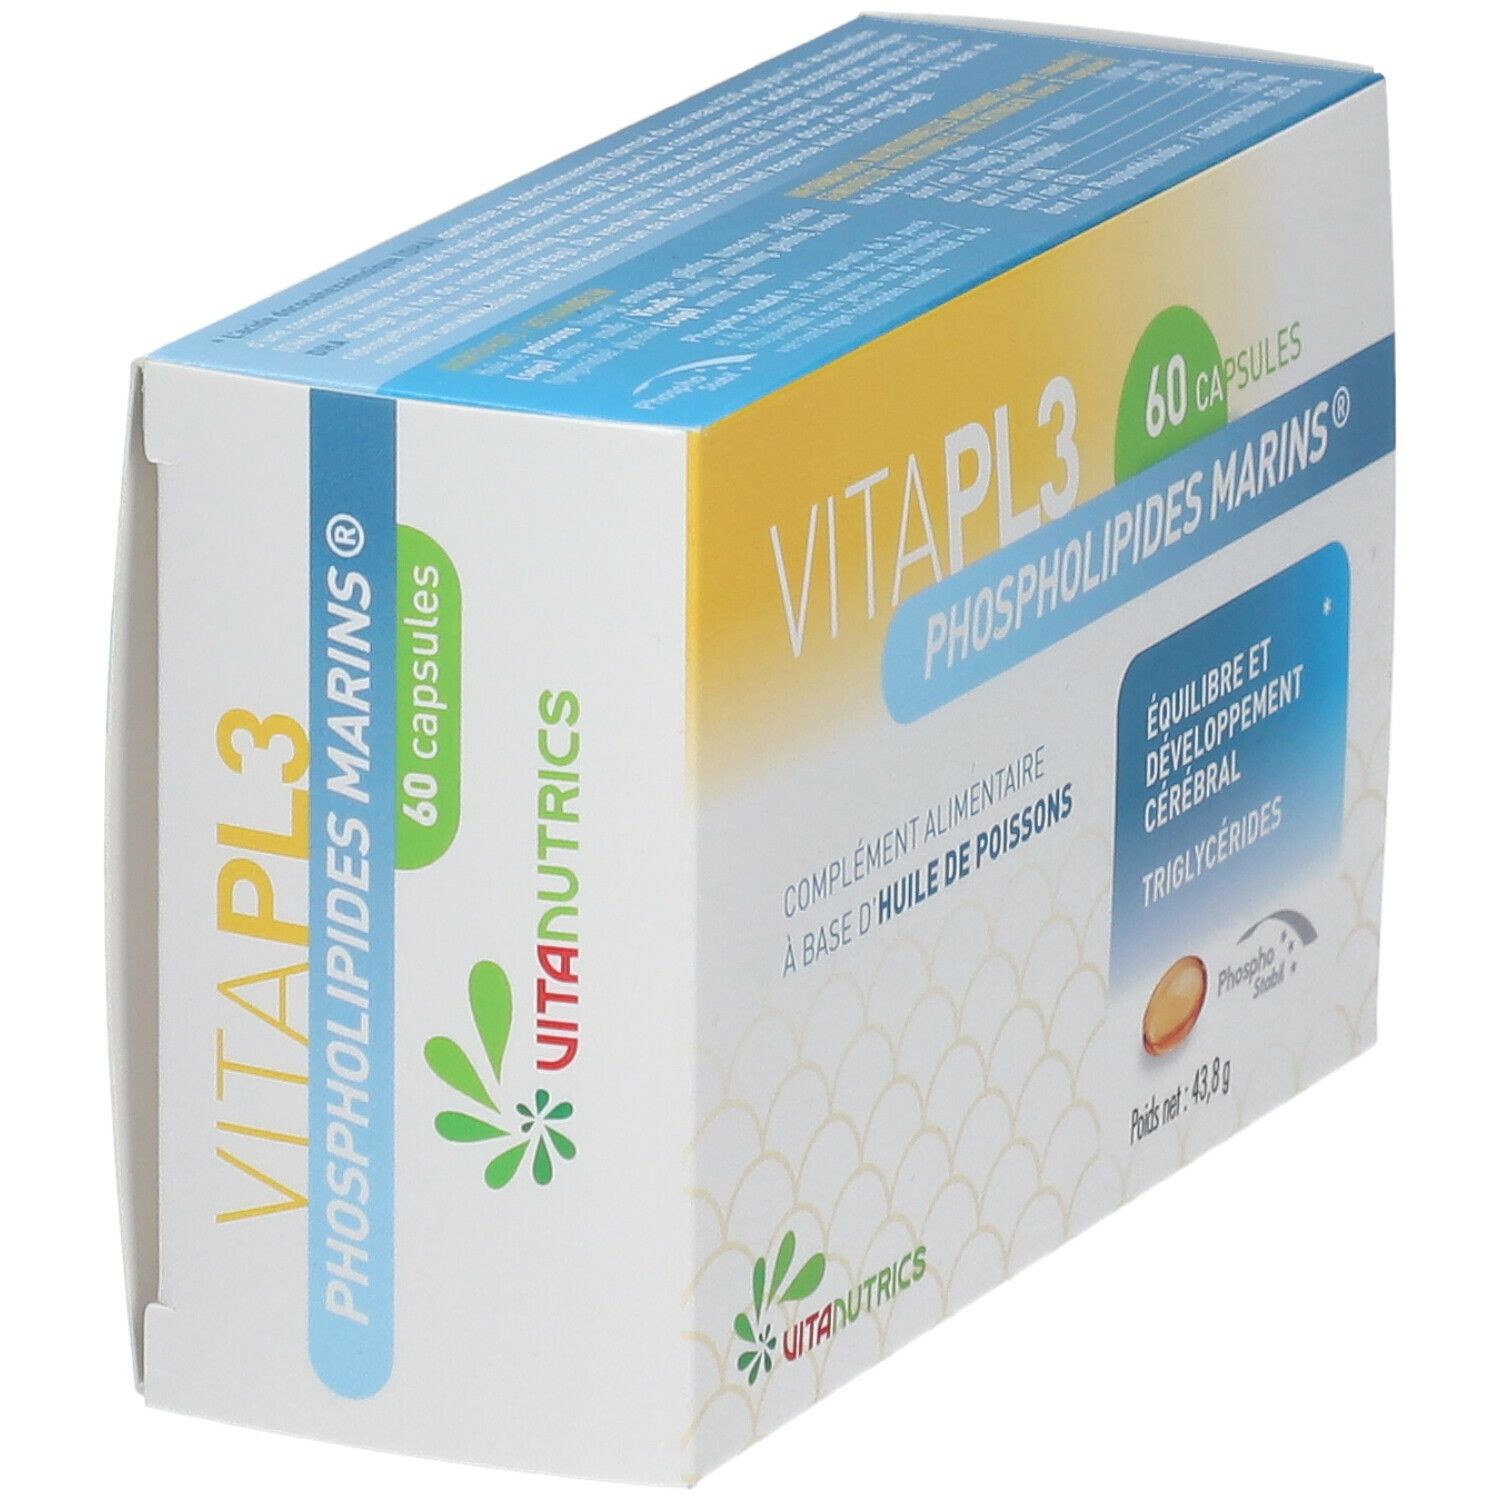 Vitanutrics Vita-PL3 Phospholipides Marins®